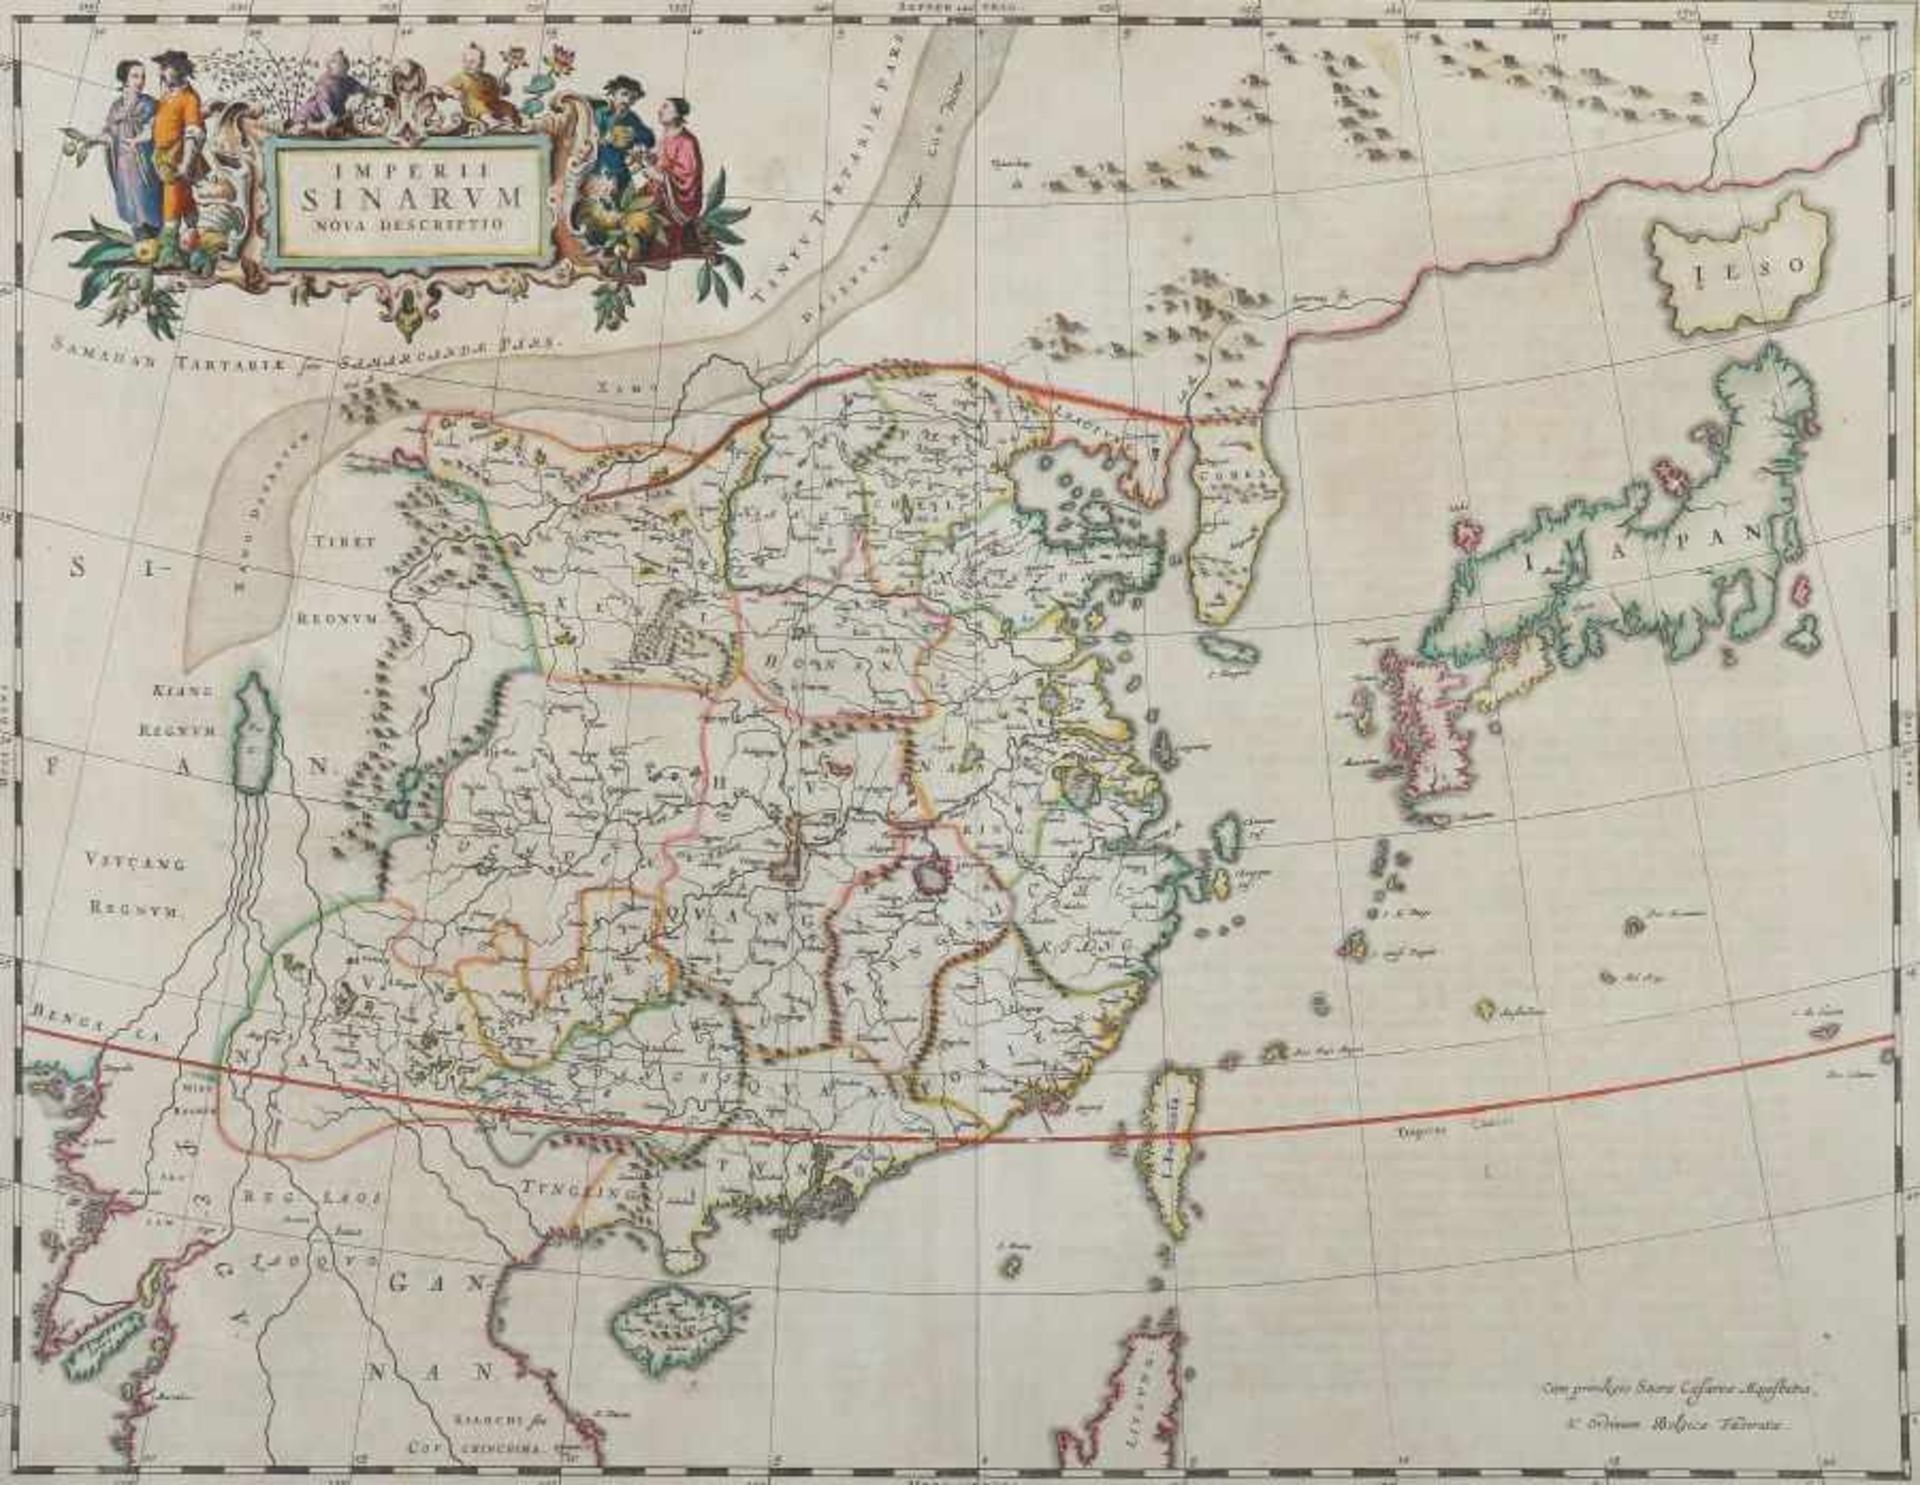 Blaeu, Joan 1599 - 1673. "Imperii Sinarum, nova descriptio", umfasst China, Japan und Korea, oben